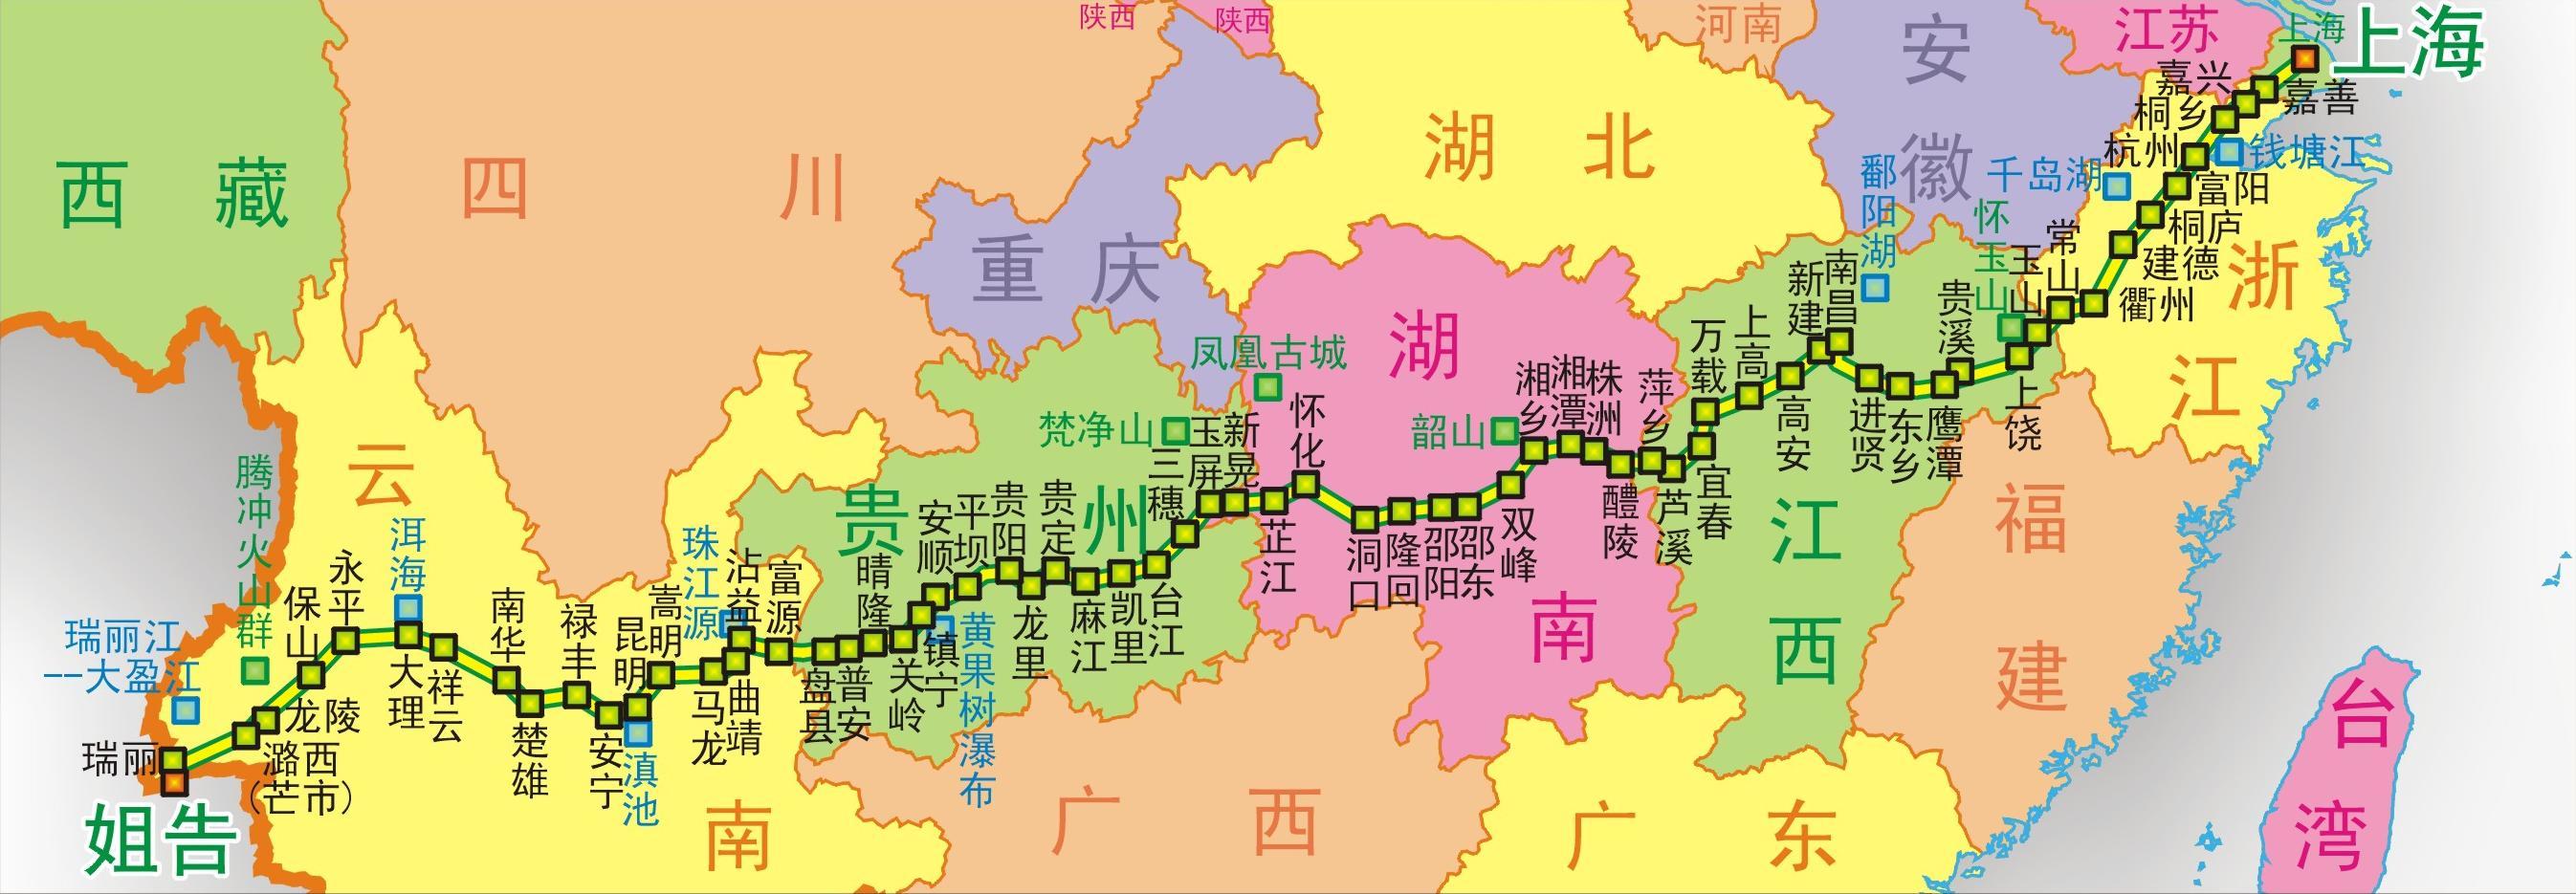 320国道(其他)320国道(国道320线,g320线)是中国一条道路,起点为